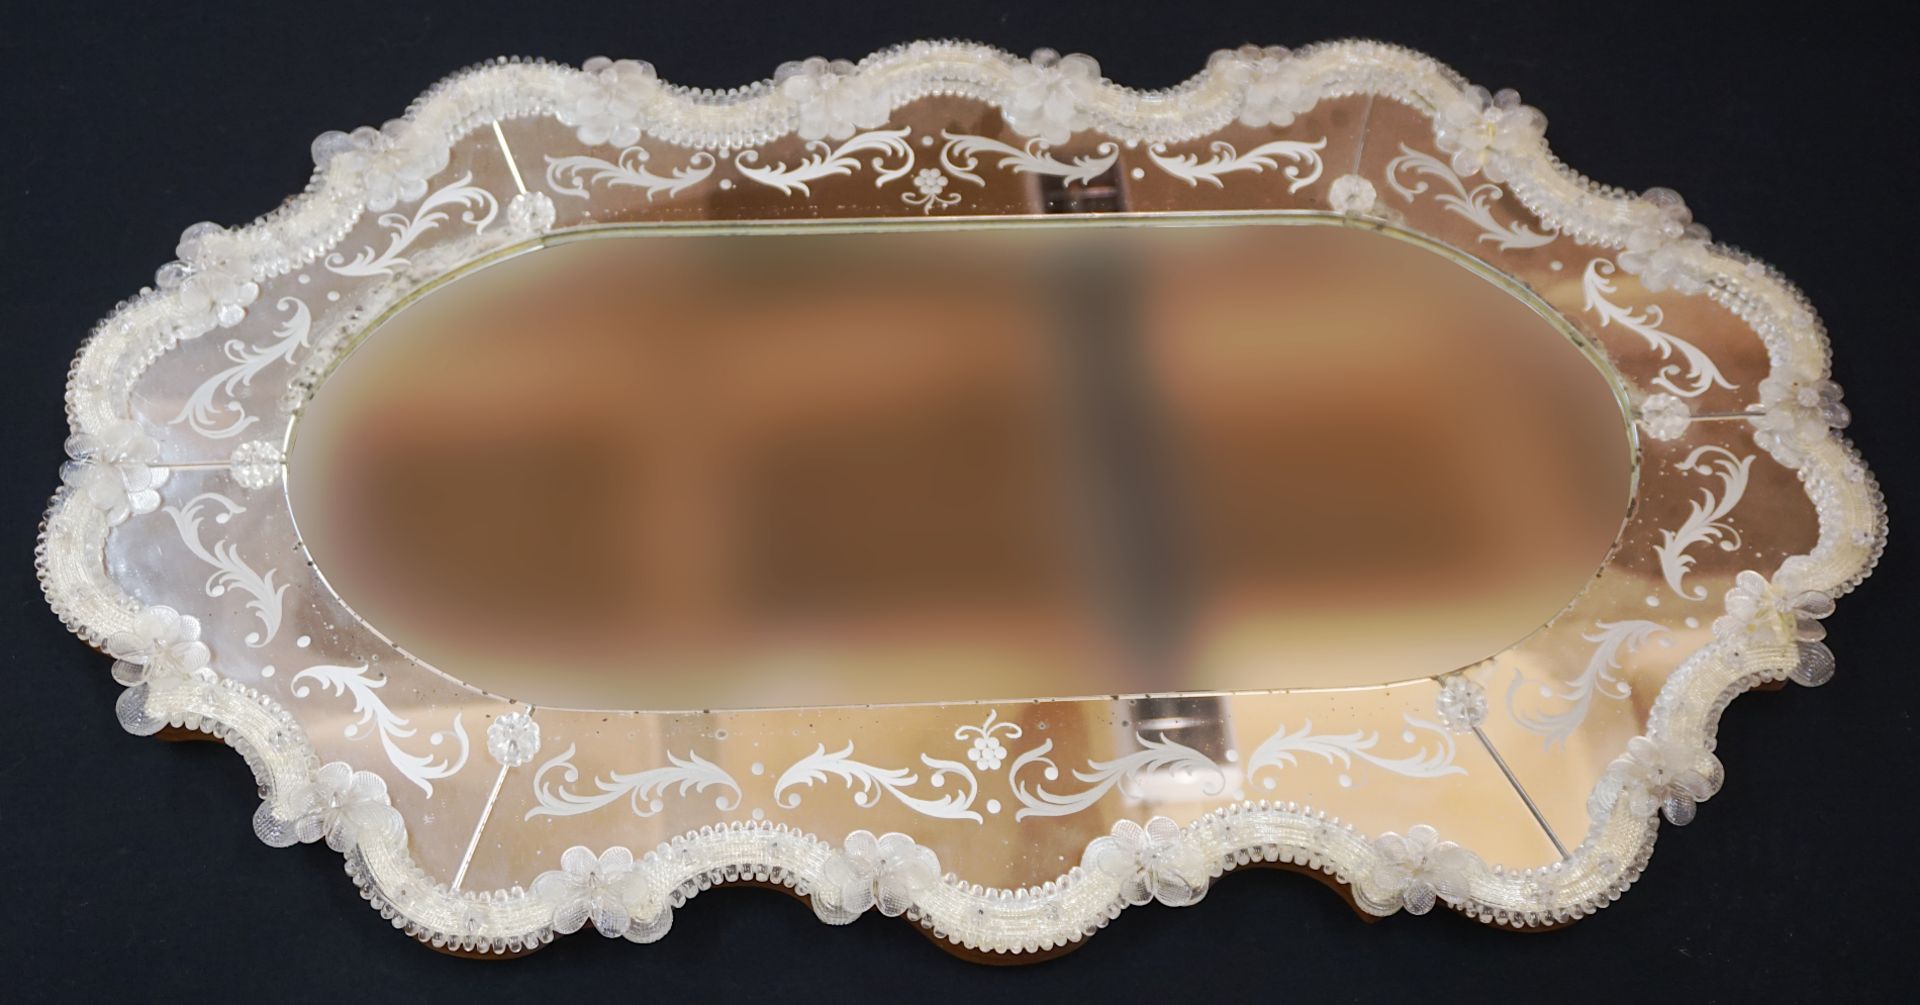 1 venezianischer Spiegel wohl 20. Jh. mit versch. Glasapplikationen ca. 95x56cm, min. besch. (blinde